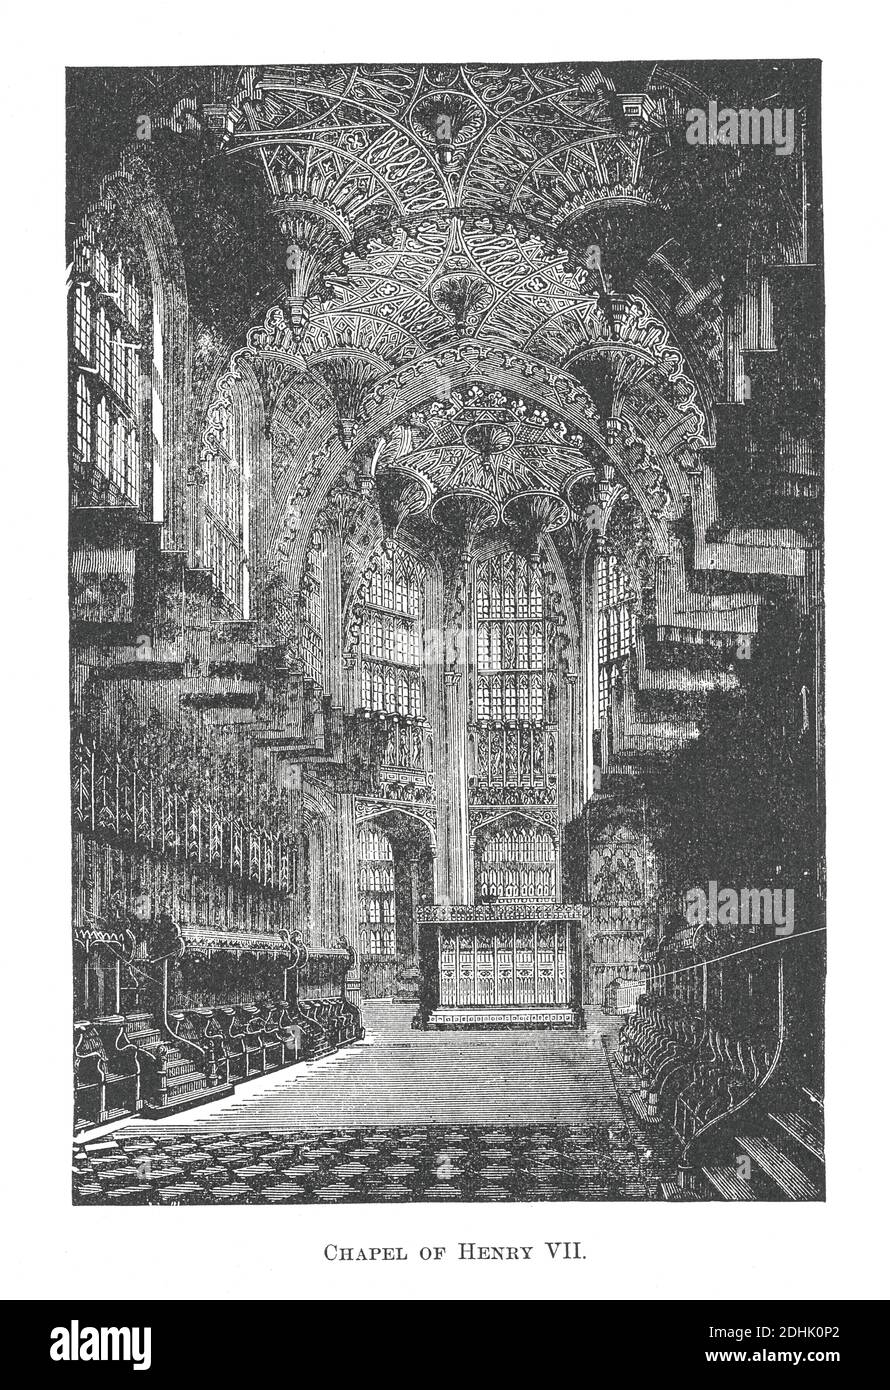 Im 19. Jahrhundert Illustration der Henry VII Lady Chapel, jetzt häufiger als die Henry VII Chapel bekannt, ist eine große Lady Chapel am äußersten östlichen Ende von Stockfoto